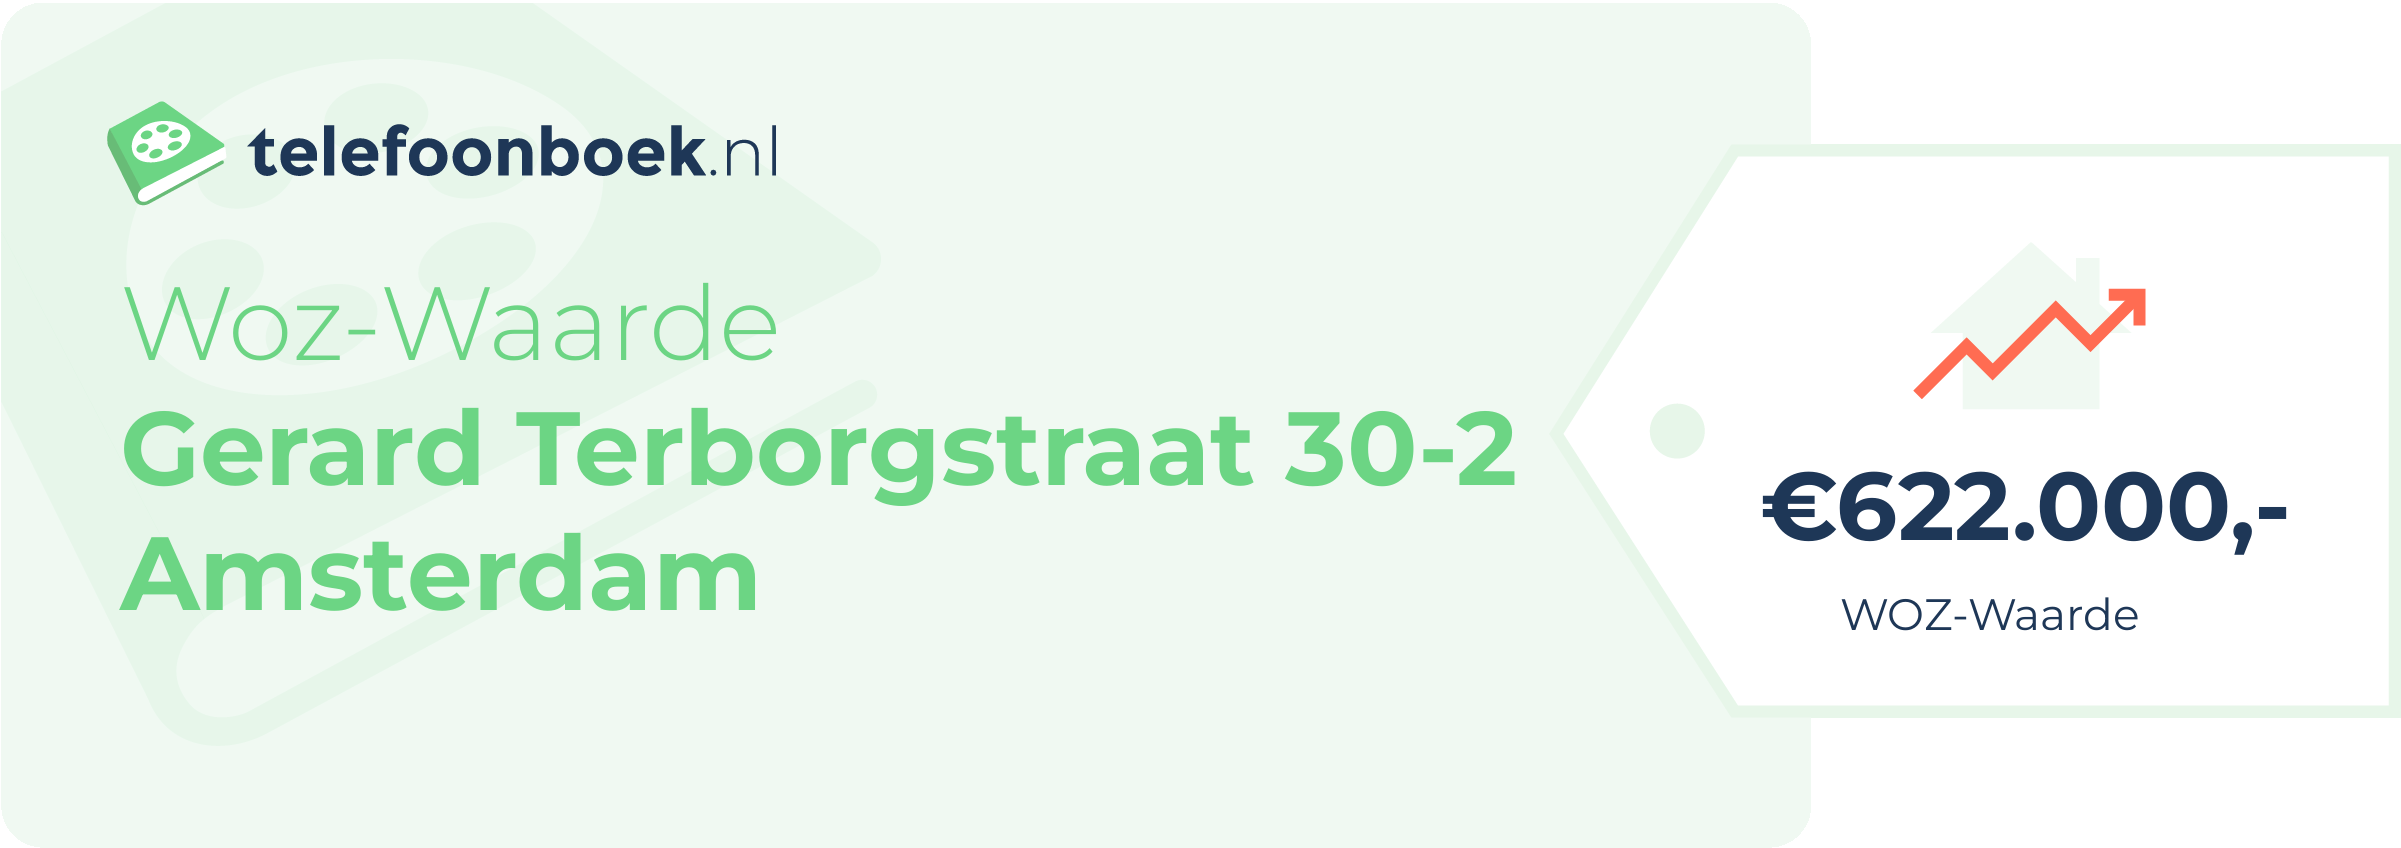 WOZ-waarde Gerard Terborgstraat 30-2 Amsterdam